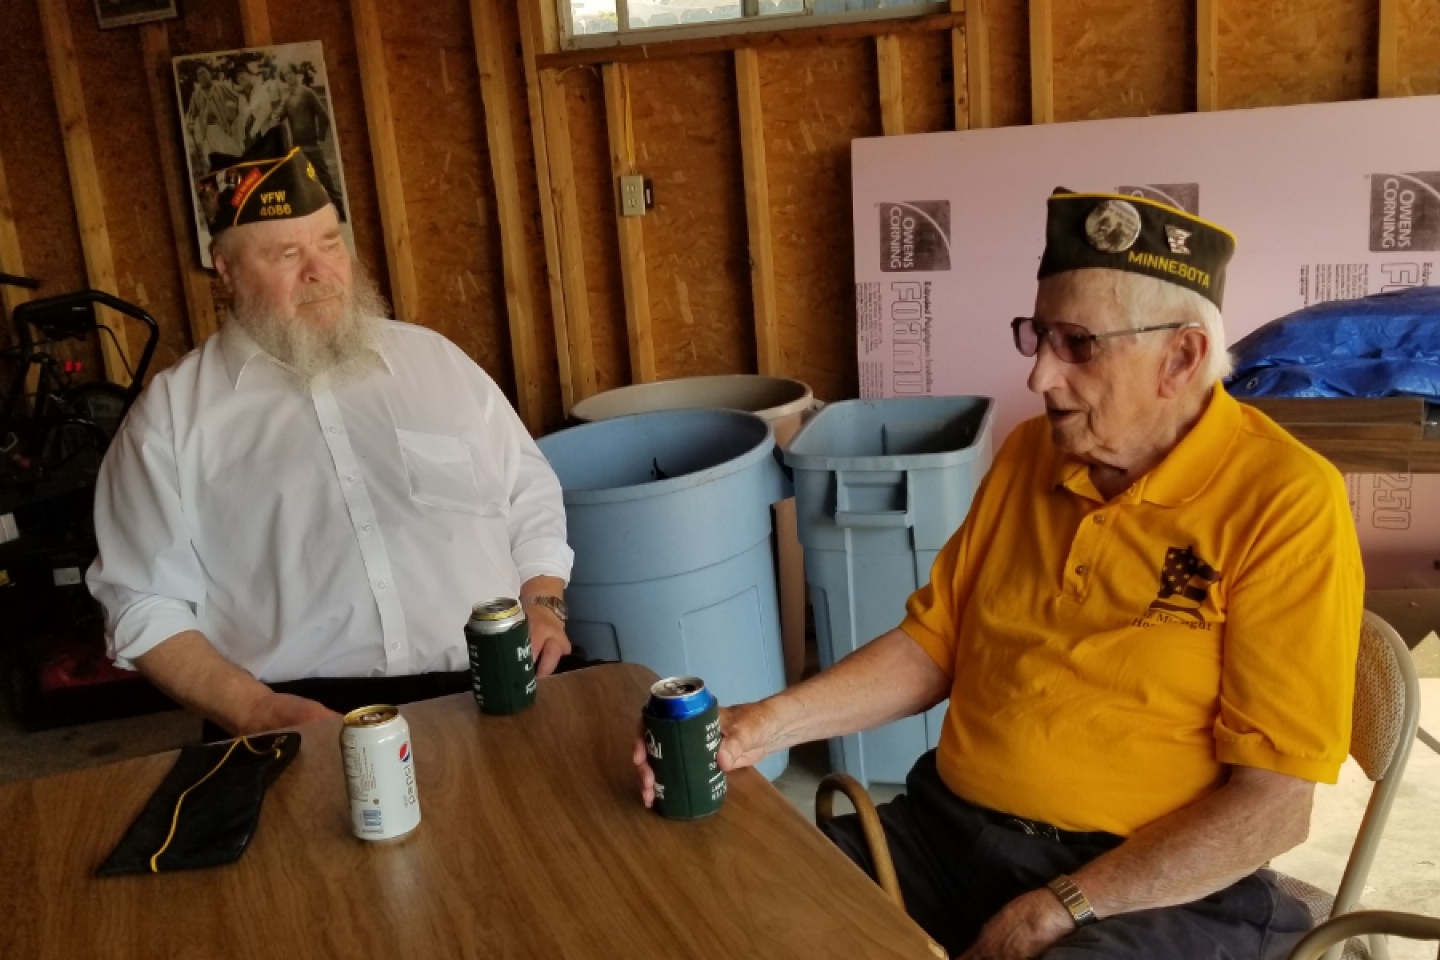 Vietnam Veteran, Bill Hanson, and World War II Veteran, Gerry Weinrich